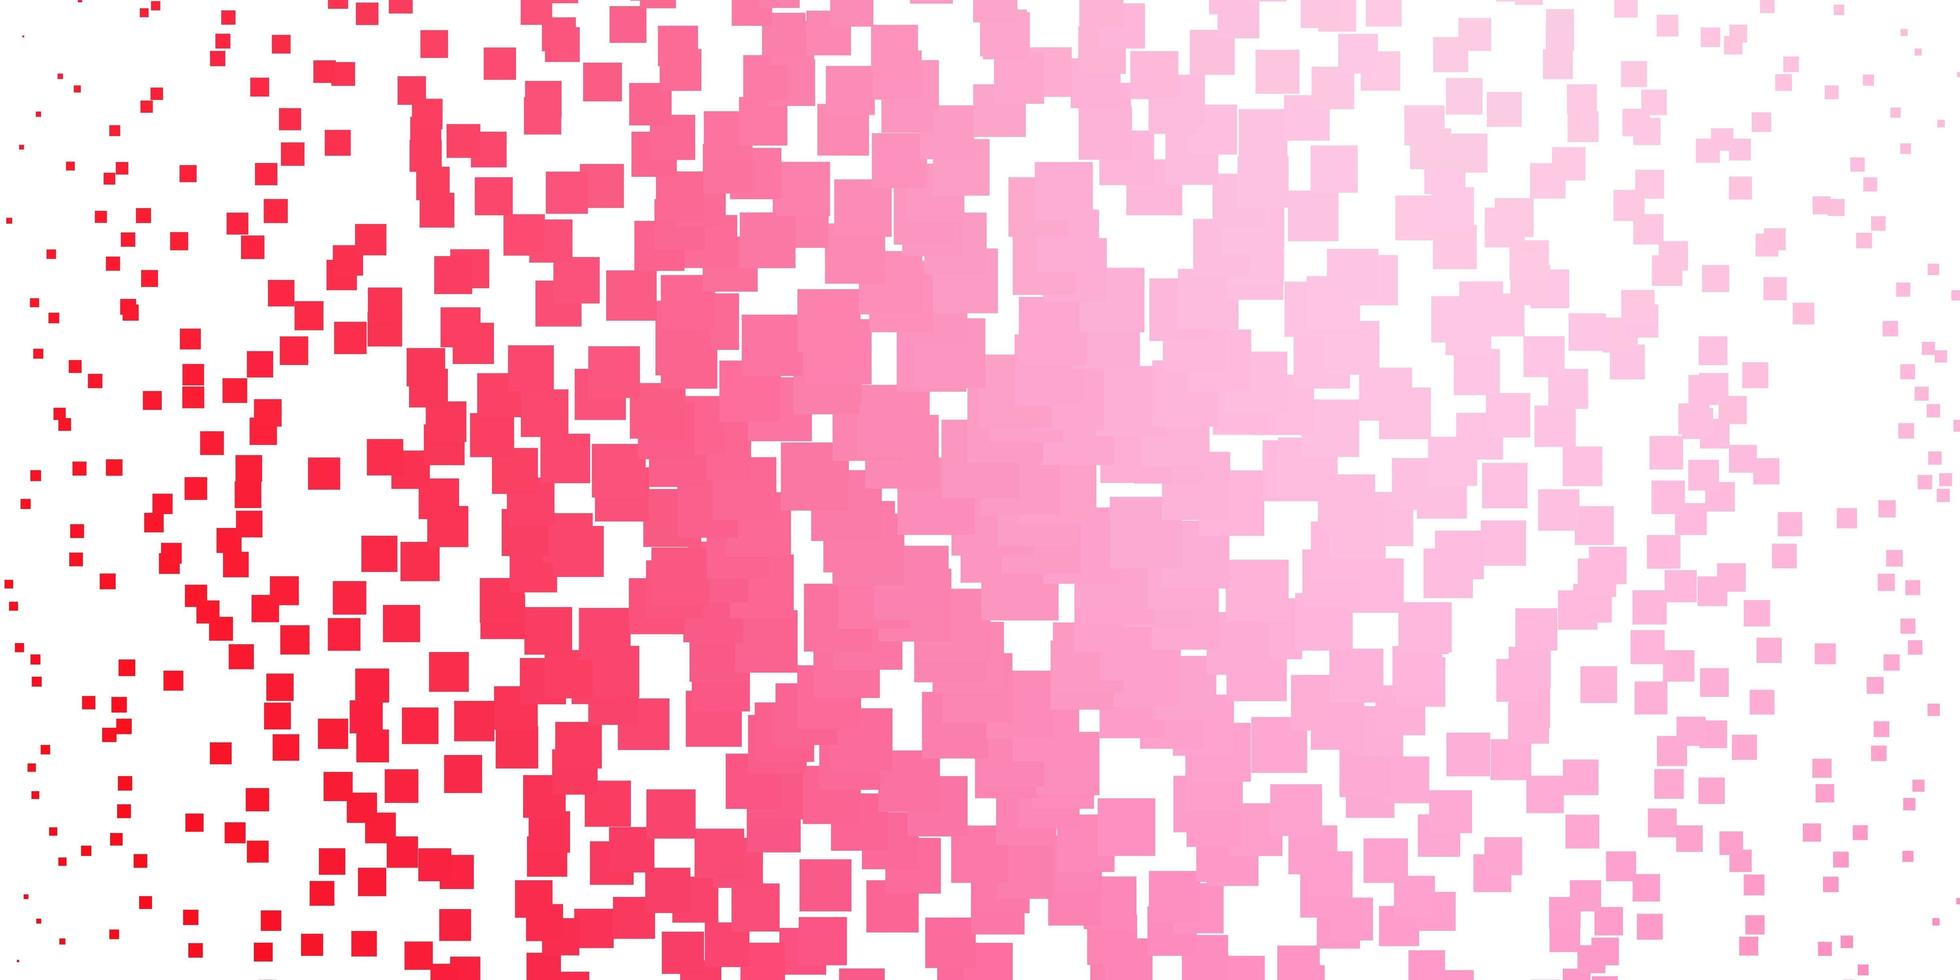 Fondo de vector rojo claro en estilo poligonal nueva ilustración abstracta con formas rectangulares mejor diseño para su banner de cartel publicitario